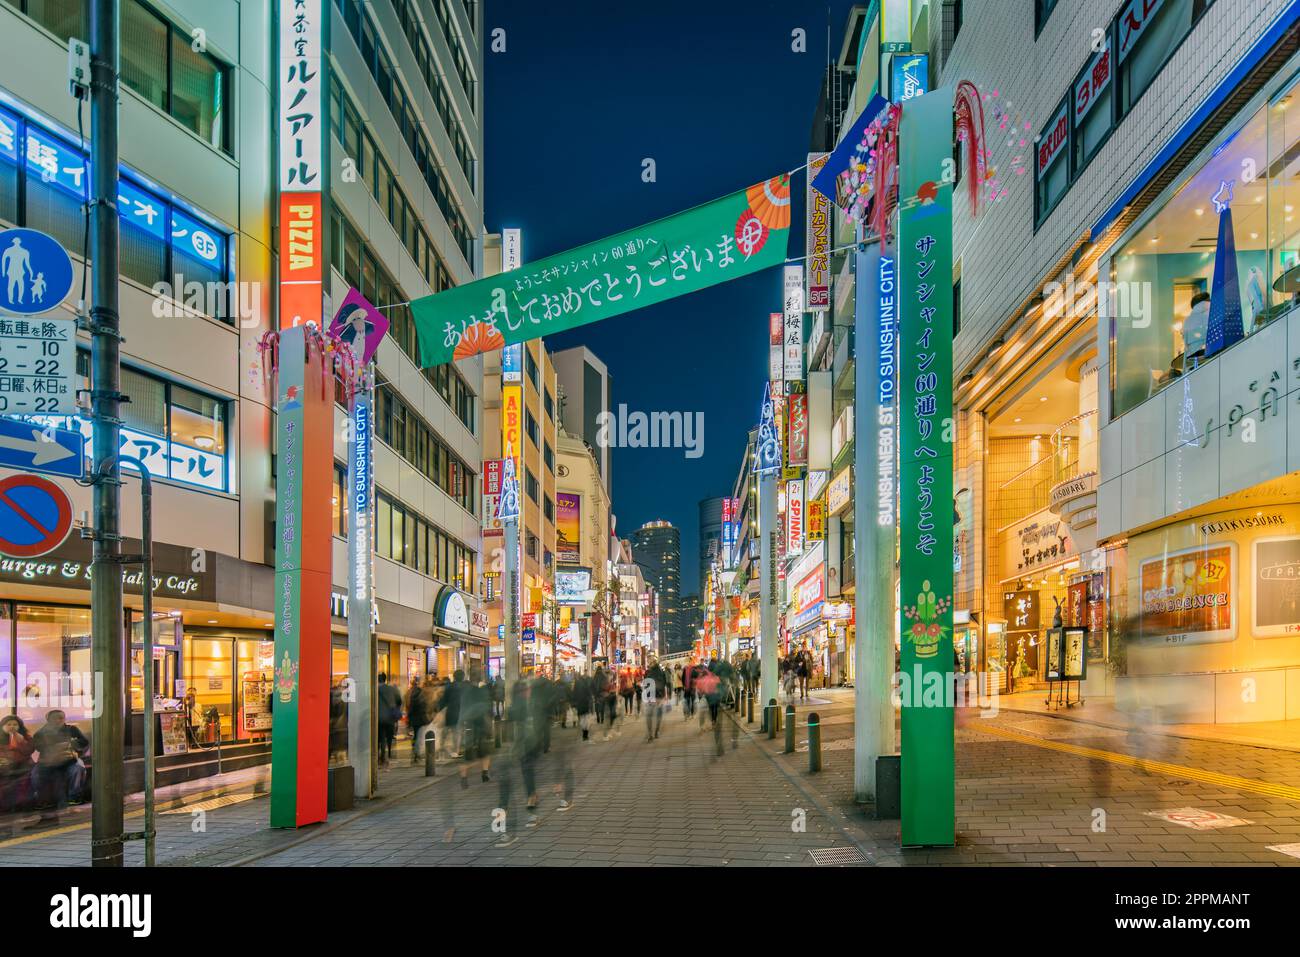 ikebukuro, japan - dezember 31 2019: Nachtansicht der Menschenmenge auf der Fußgängerüberfahrt der Sunshine 60 Street, die zur berühmten otome Road dec führt Stockfoto